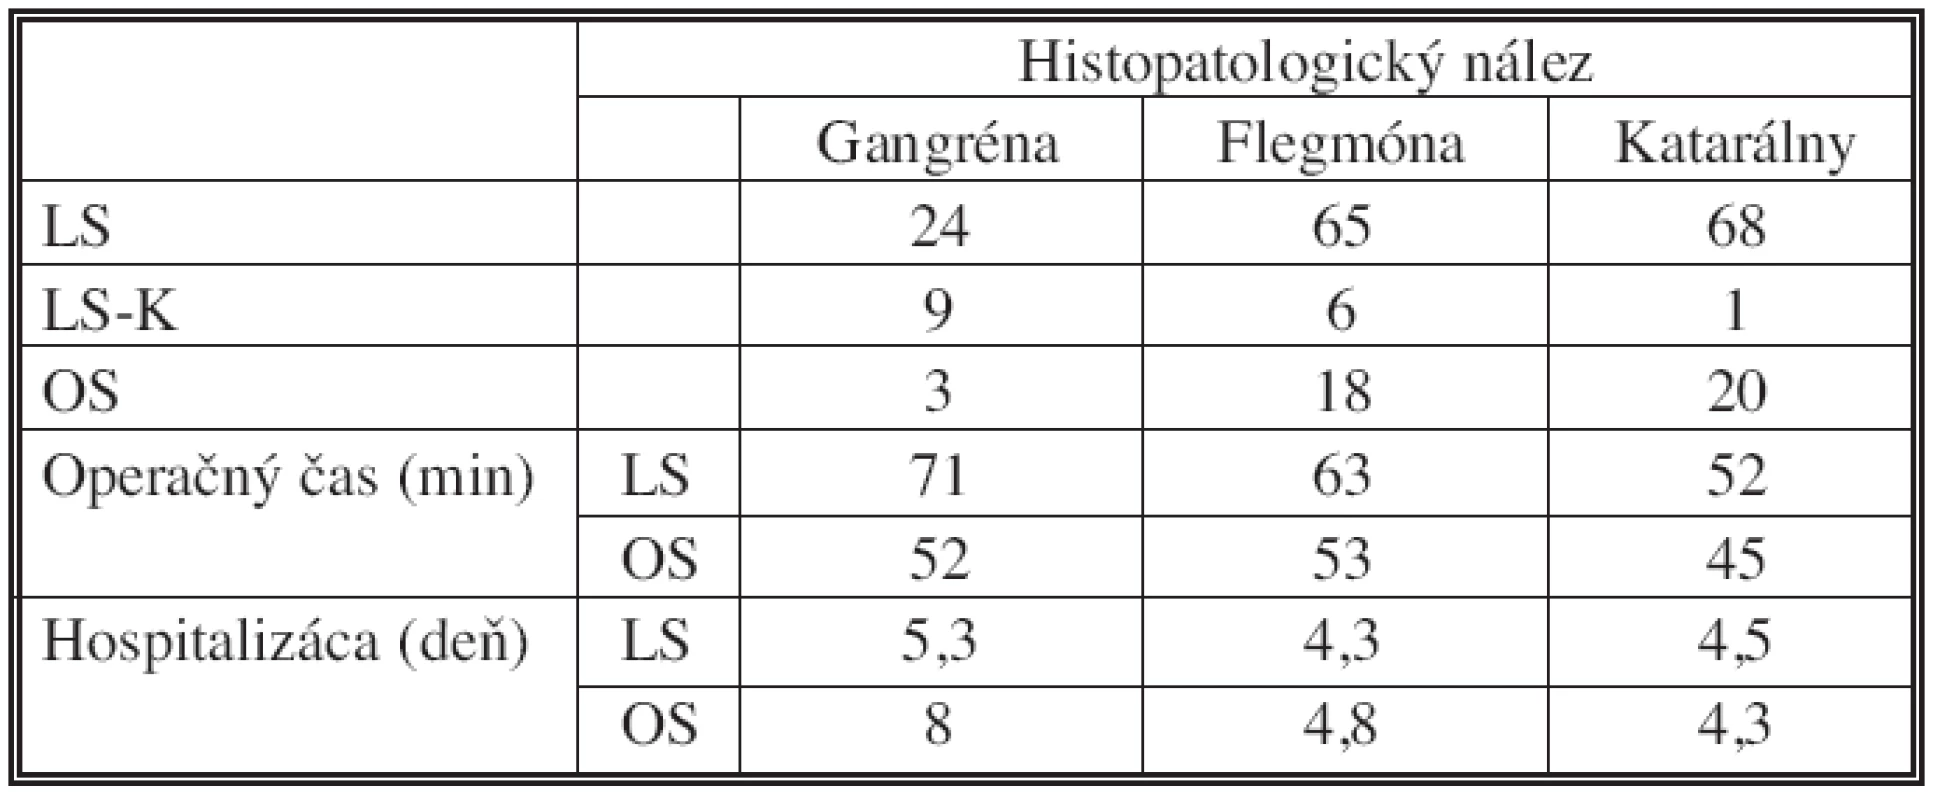 Rozdelenie súboru pacientov a výsledkov podľa histopatologického nálezu, n = 214
Tab. 2. The patient group classification and classification of the results according to histopathological findings, n = 214